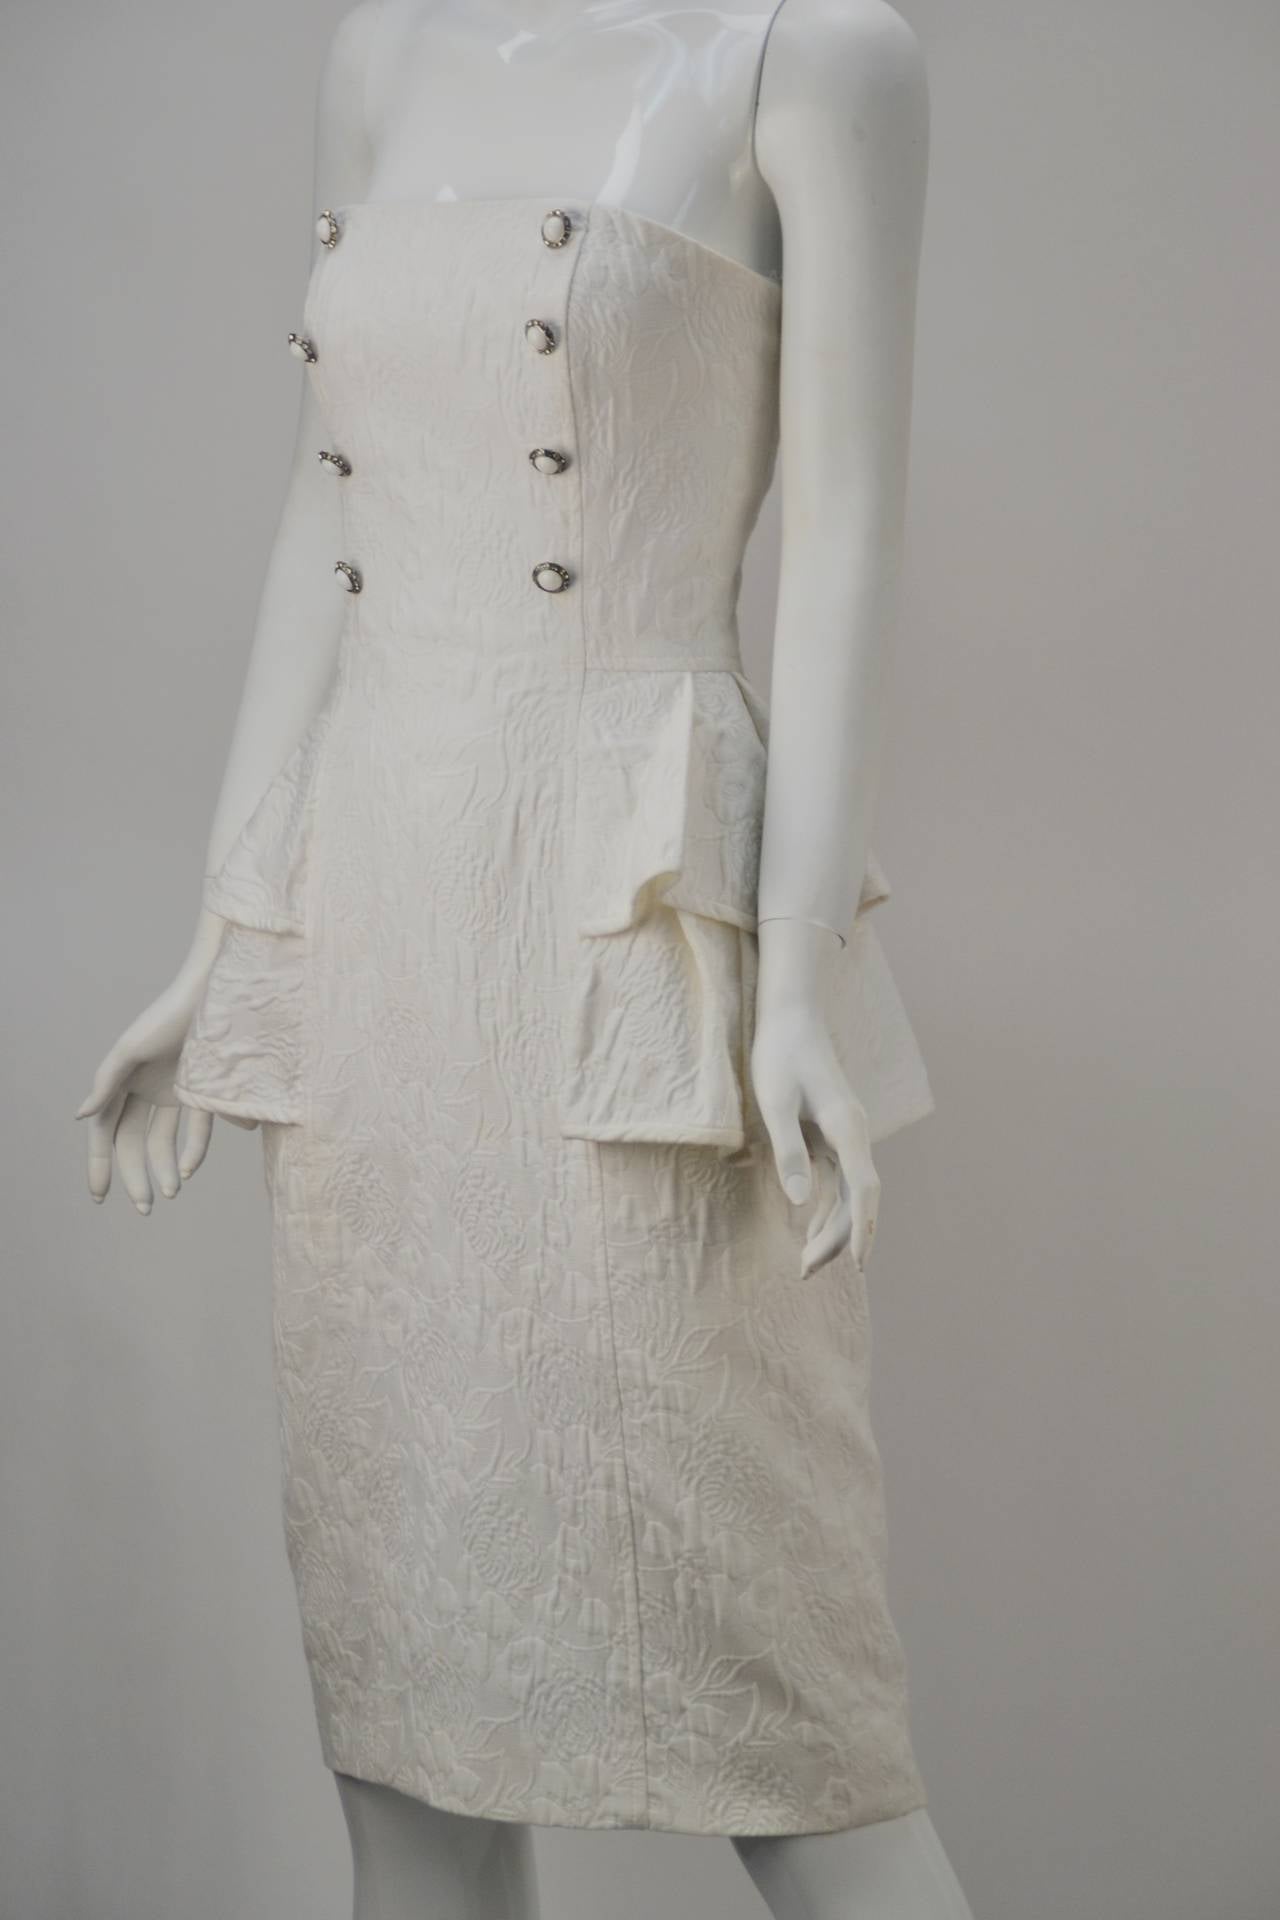 Women's 1985 Victor Costa Textured Cotton Strapless Dress